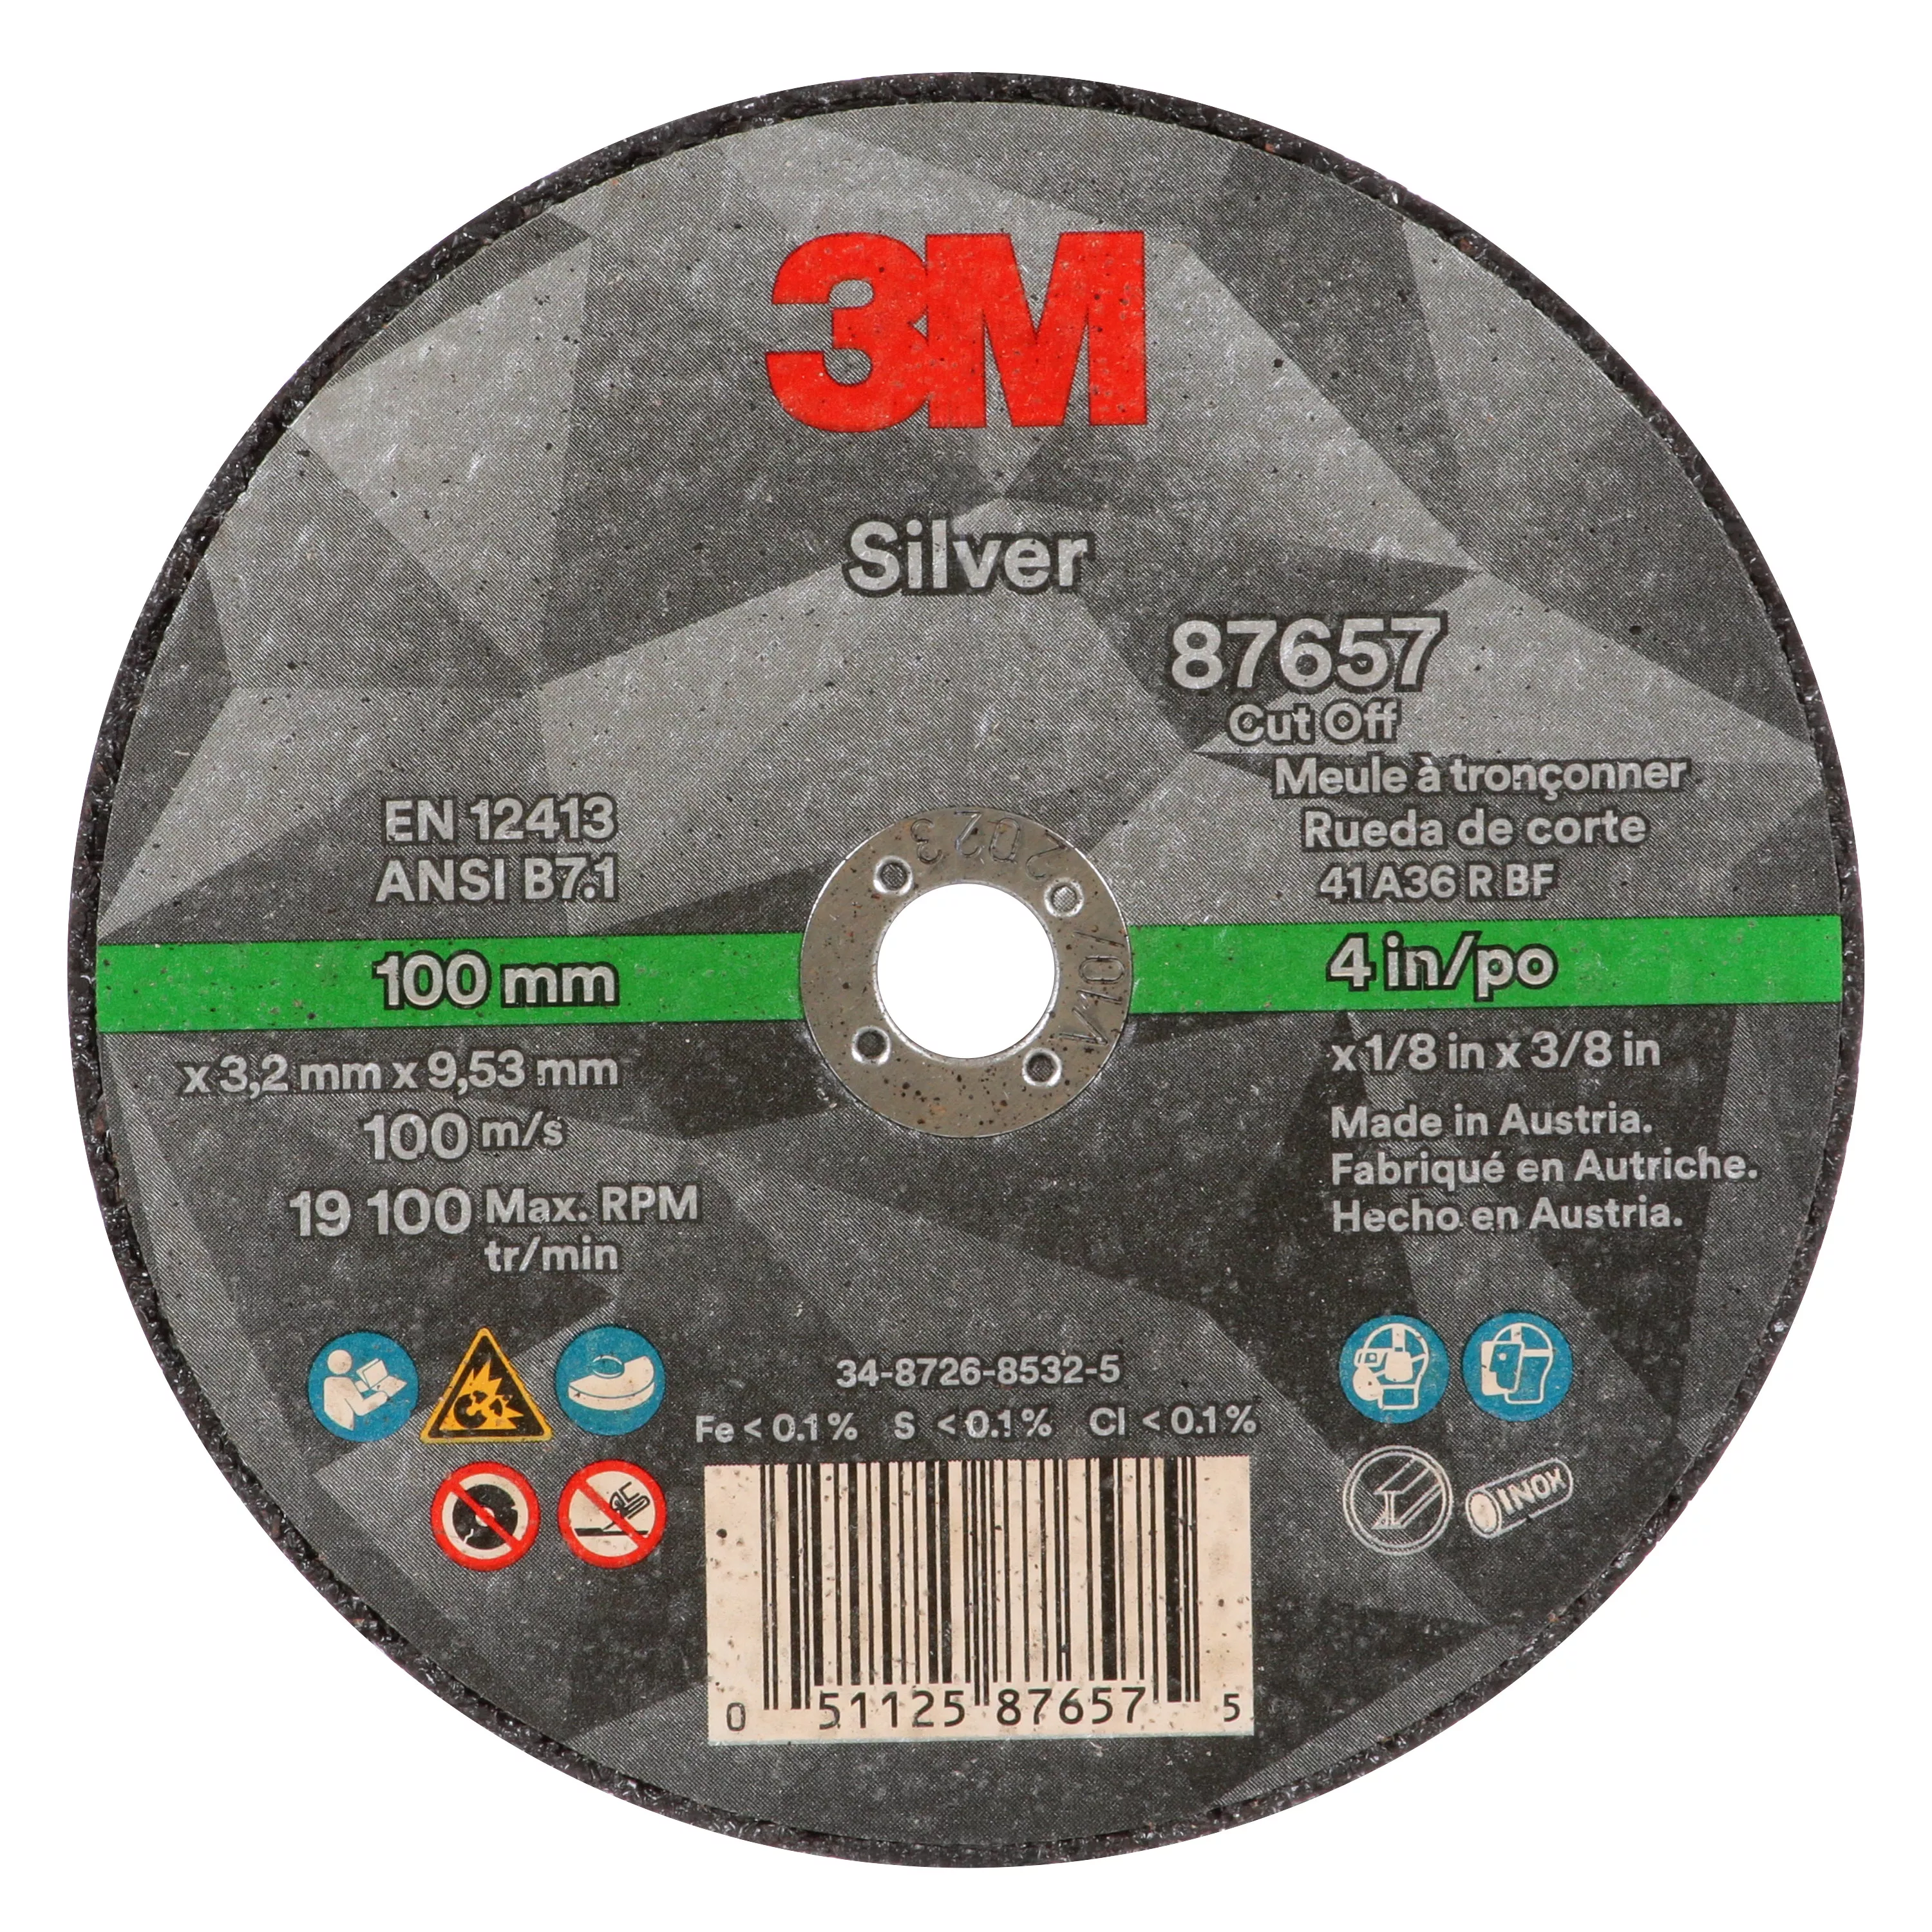 3M™ Silver Cut-Off Wheel, 87657, Type 1, 4 in x 1/8 in x 3/8 in, 50
ea/Case